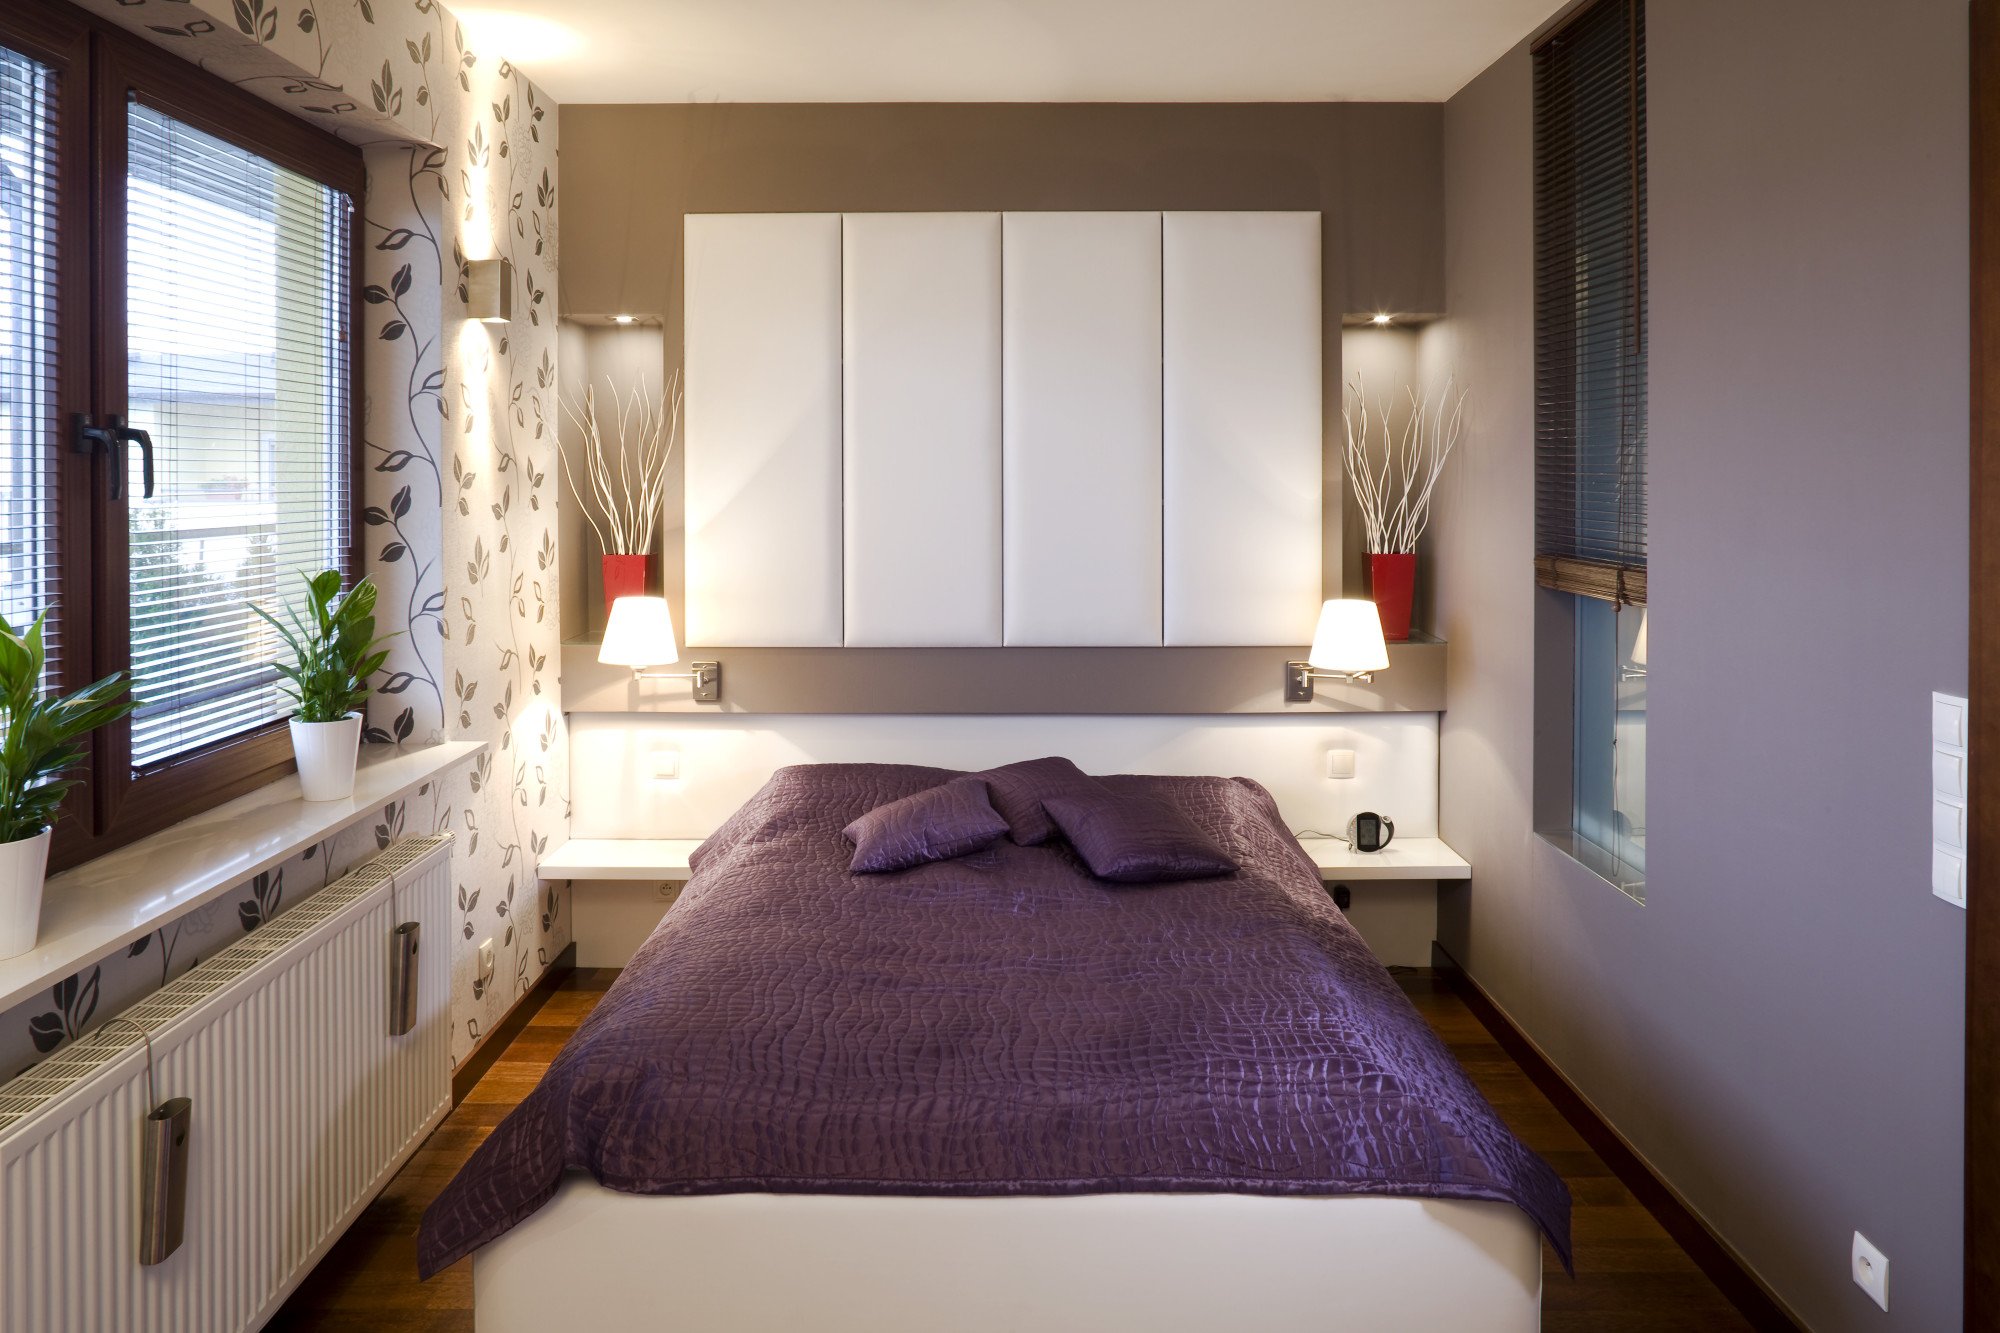 Маленькая спальня дизайн фото 6 кв. м: интерьер площадью 3 на 6 метров